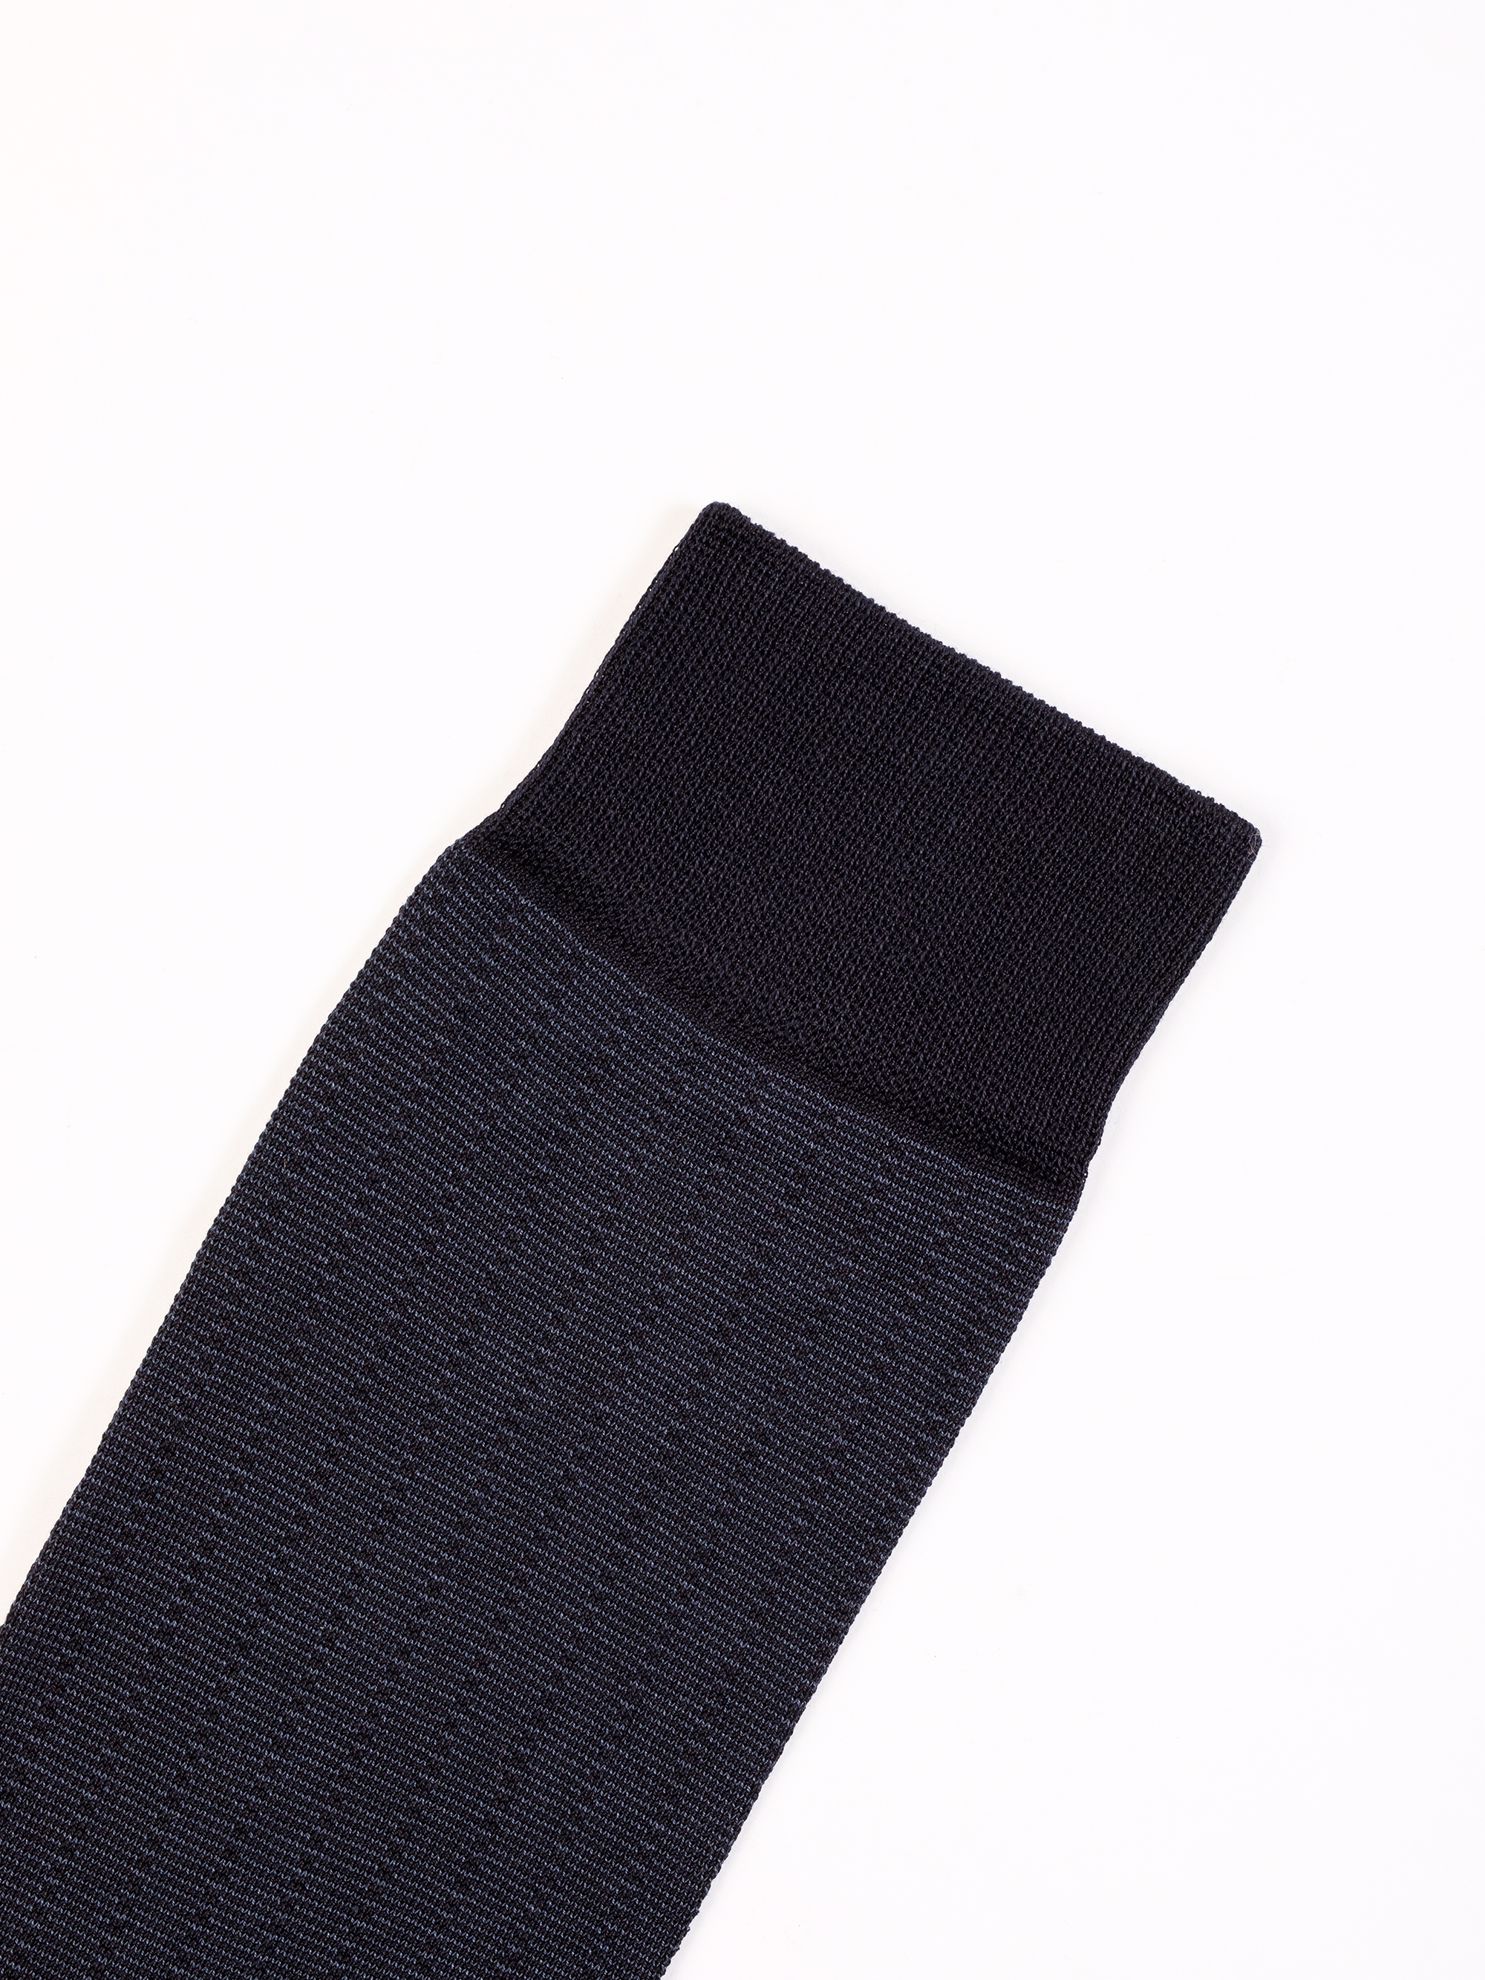 Karaca Erkek Soket Çorap-Lacivert. ürün görseli